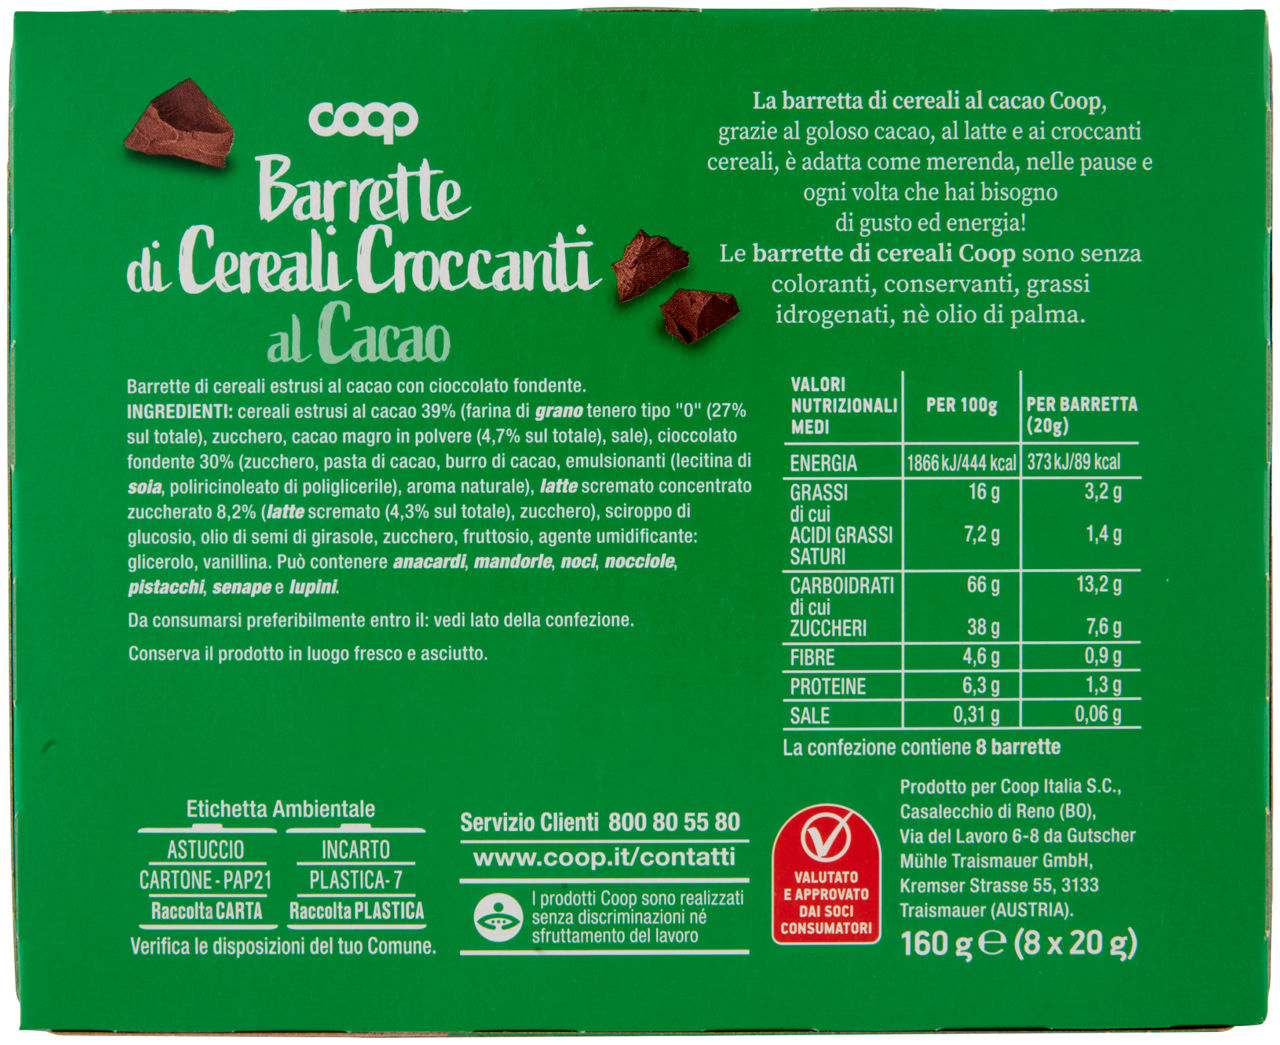 Barrette di cereali croccanti al cacao 8 x 20 g - 2